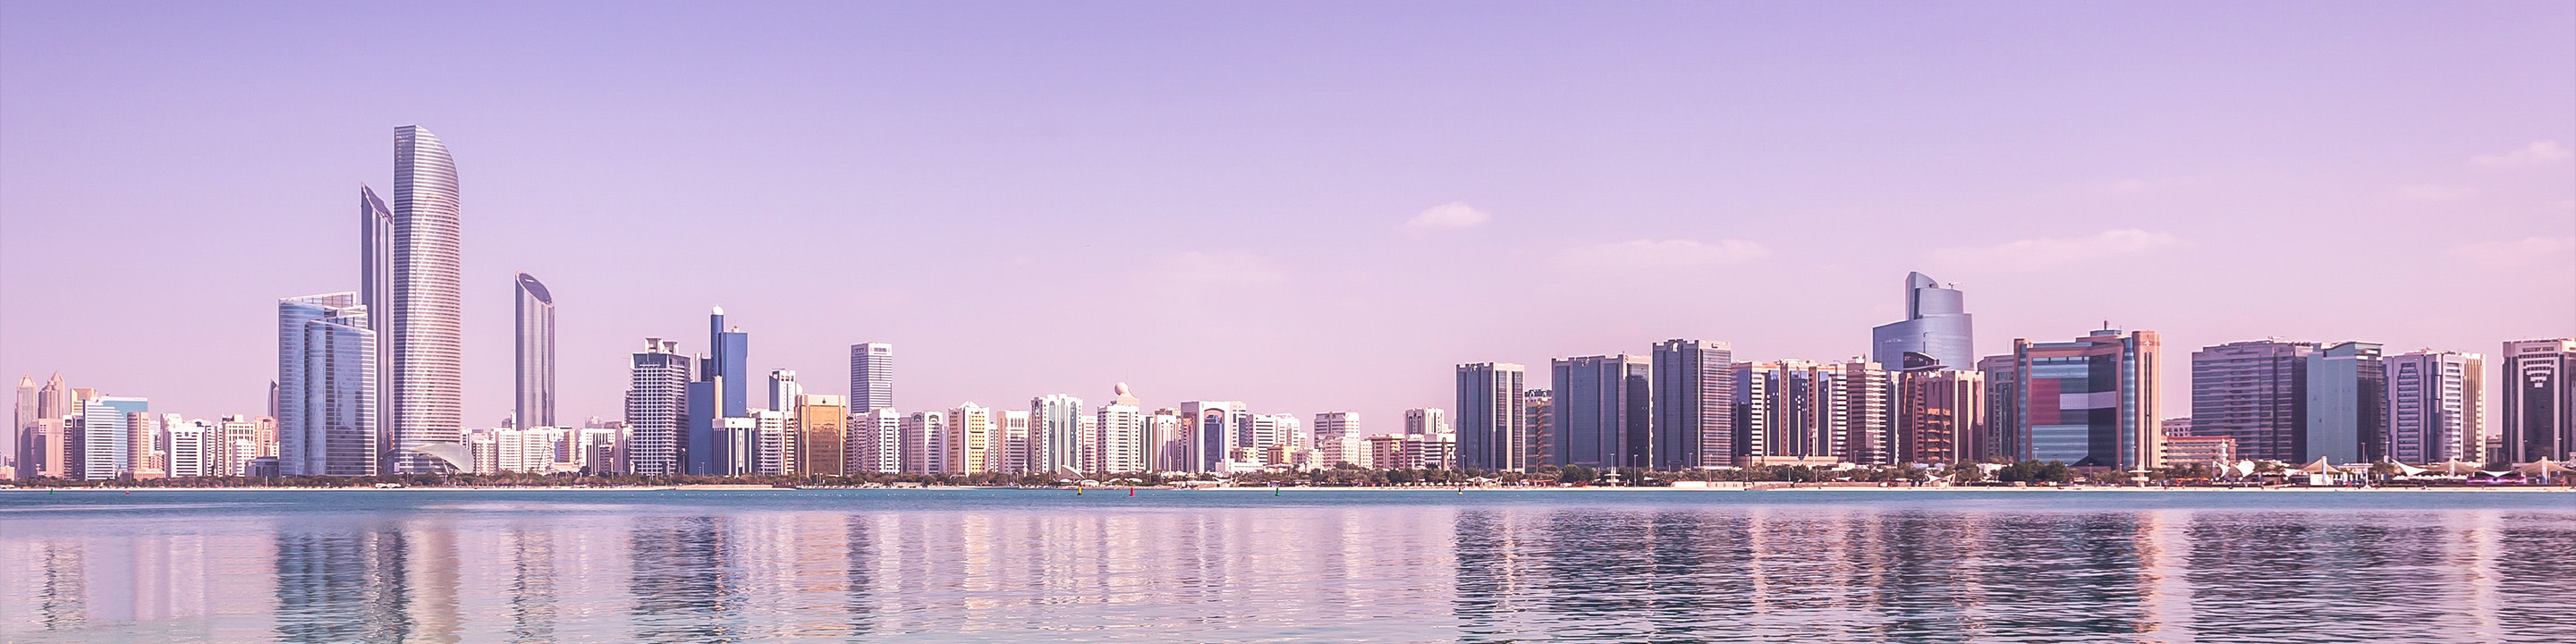 Die weitläufige Skyline von Dubai vor dem Hintergrund des lila Lichts von Dämmerung oder Morgendämmerung.